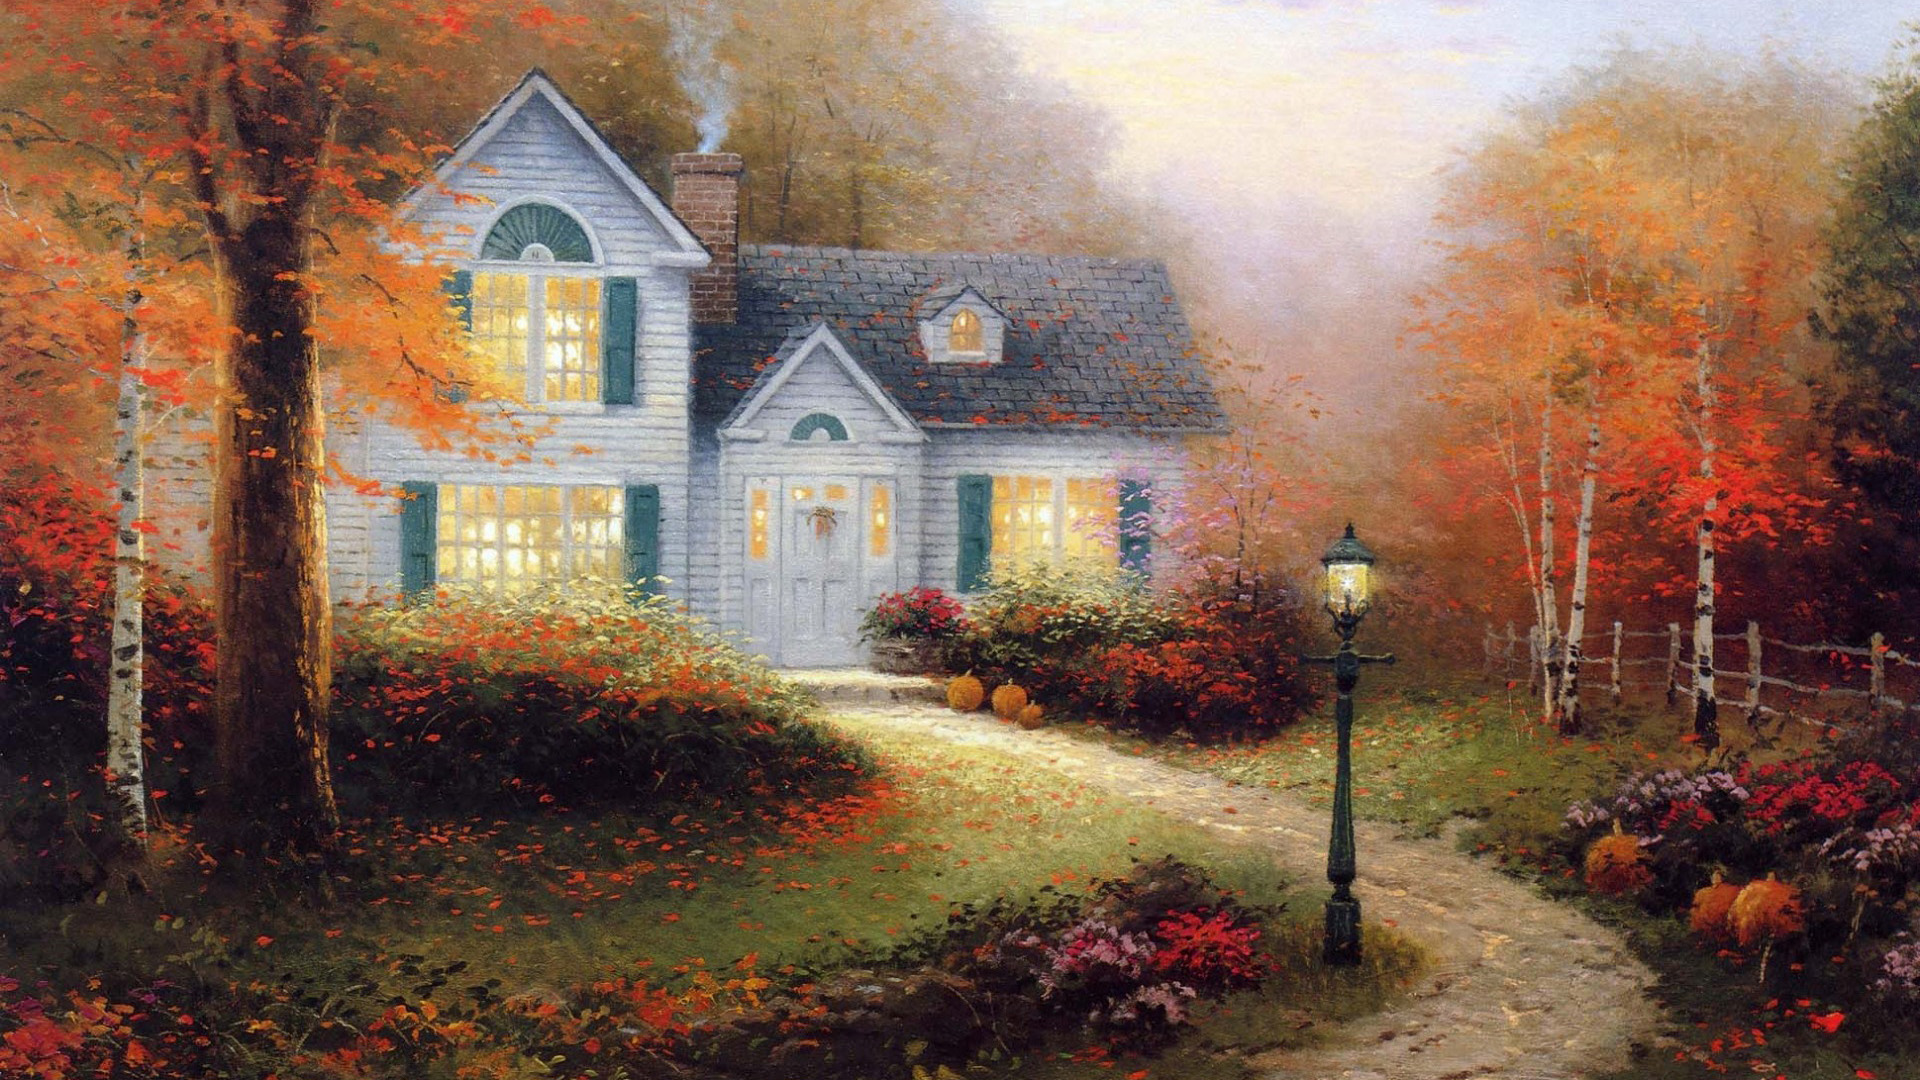 唯美意境森林,小路,房子,秋天梦境风景壁纸